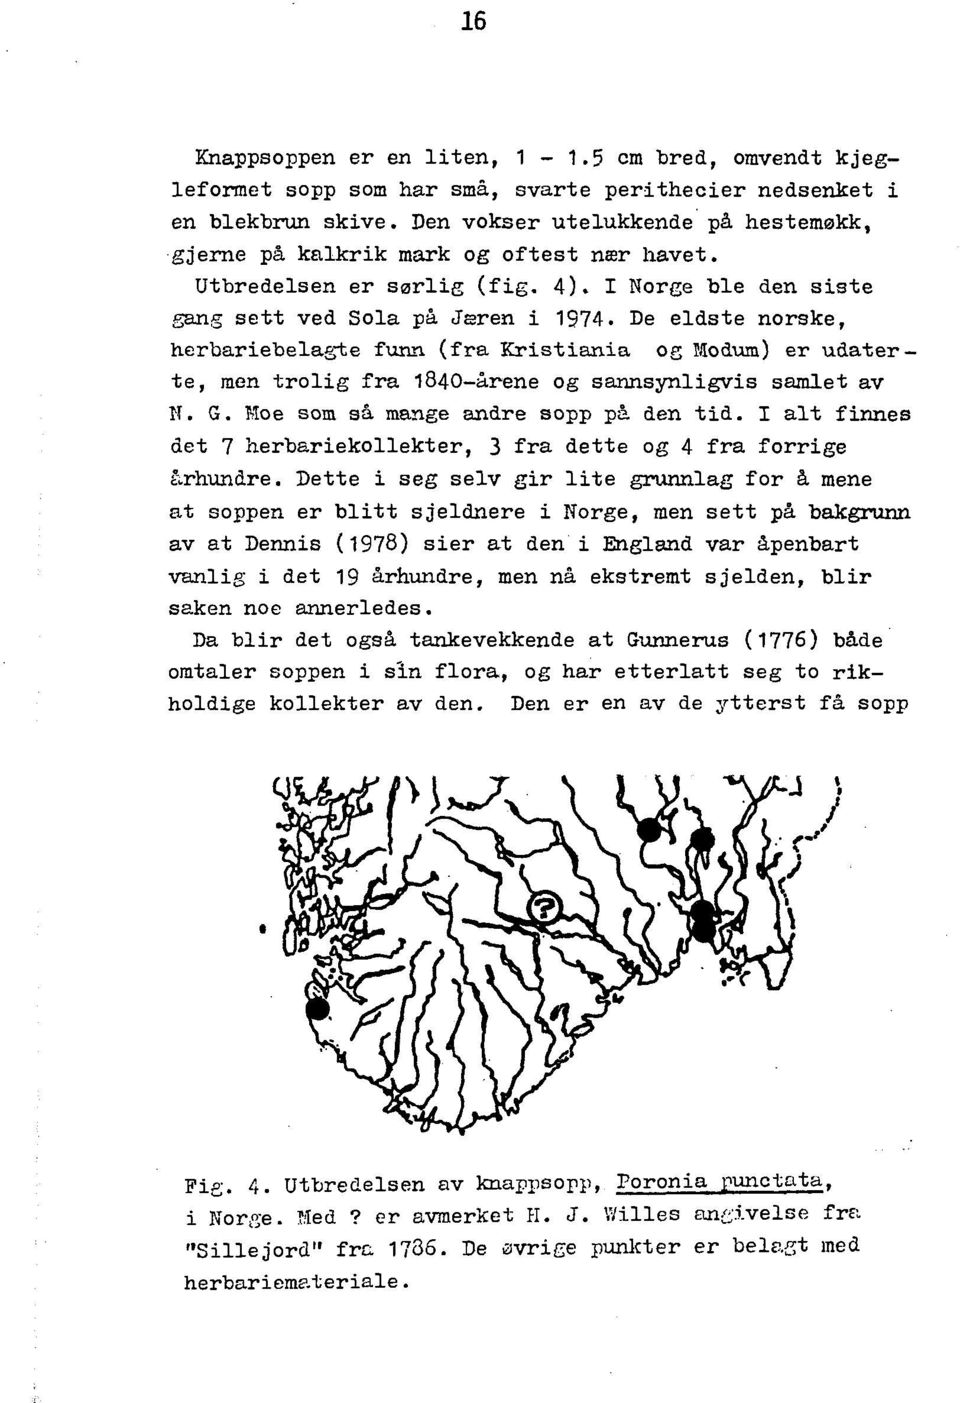 De eldste norske, herbariebelae;te funn (fra Kristiania oe rjiodum) er udaterte, men trolig fra 1840-arene og sannsynligvis samlet av N. G. Moe som sa mange andre sopp pi den tid.